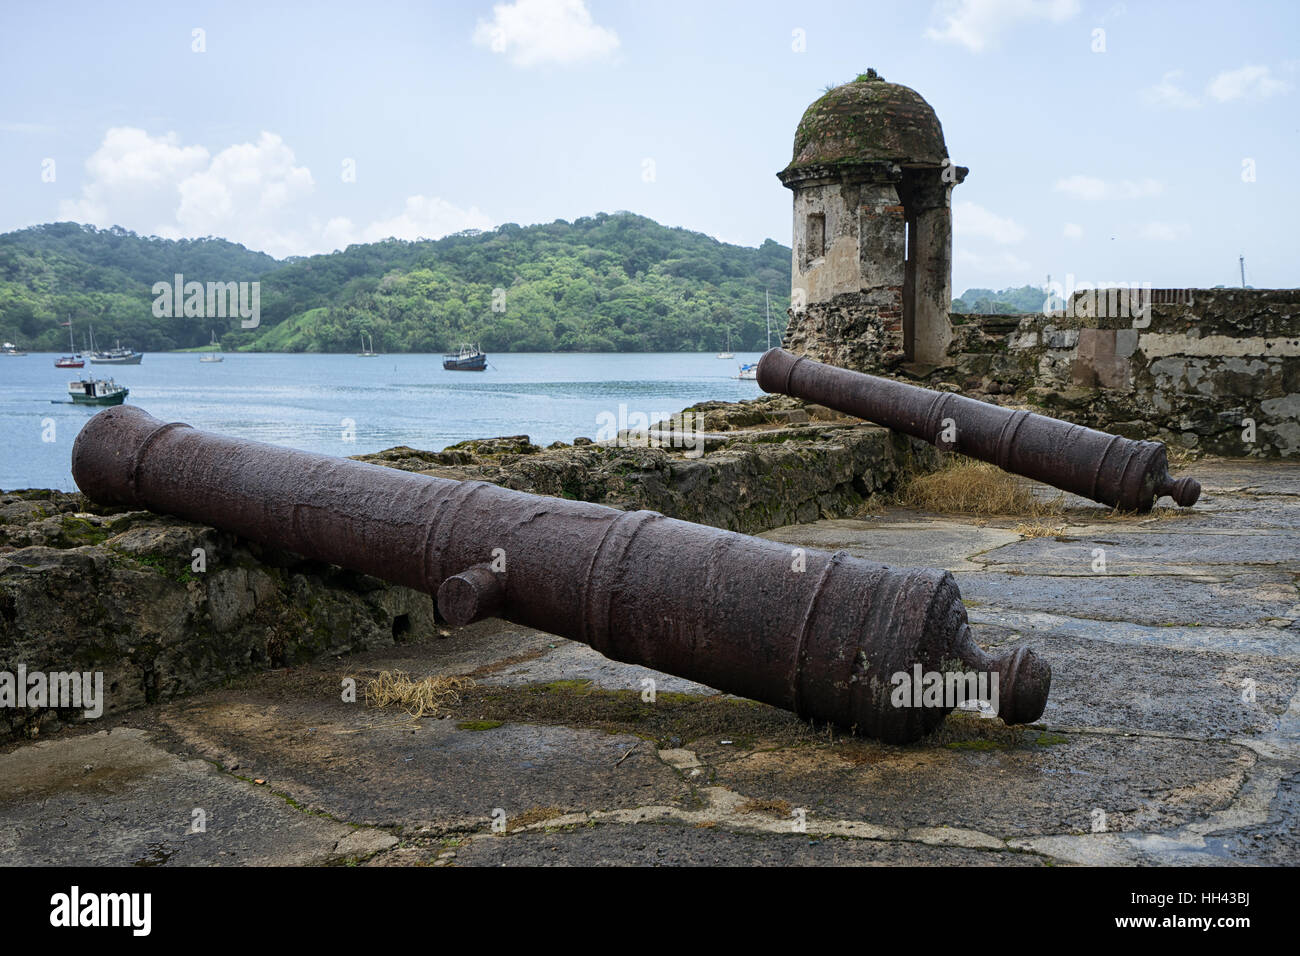 Dettagli architettonici cannoni storico Fort San Fernando Panama, abbandonato, architettura, attrazione, Edificio coloniale, Foto Stock